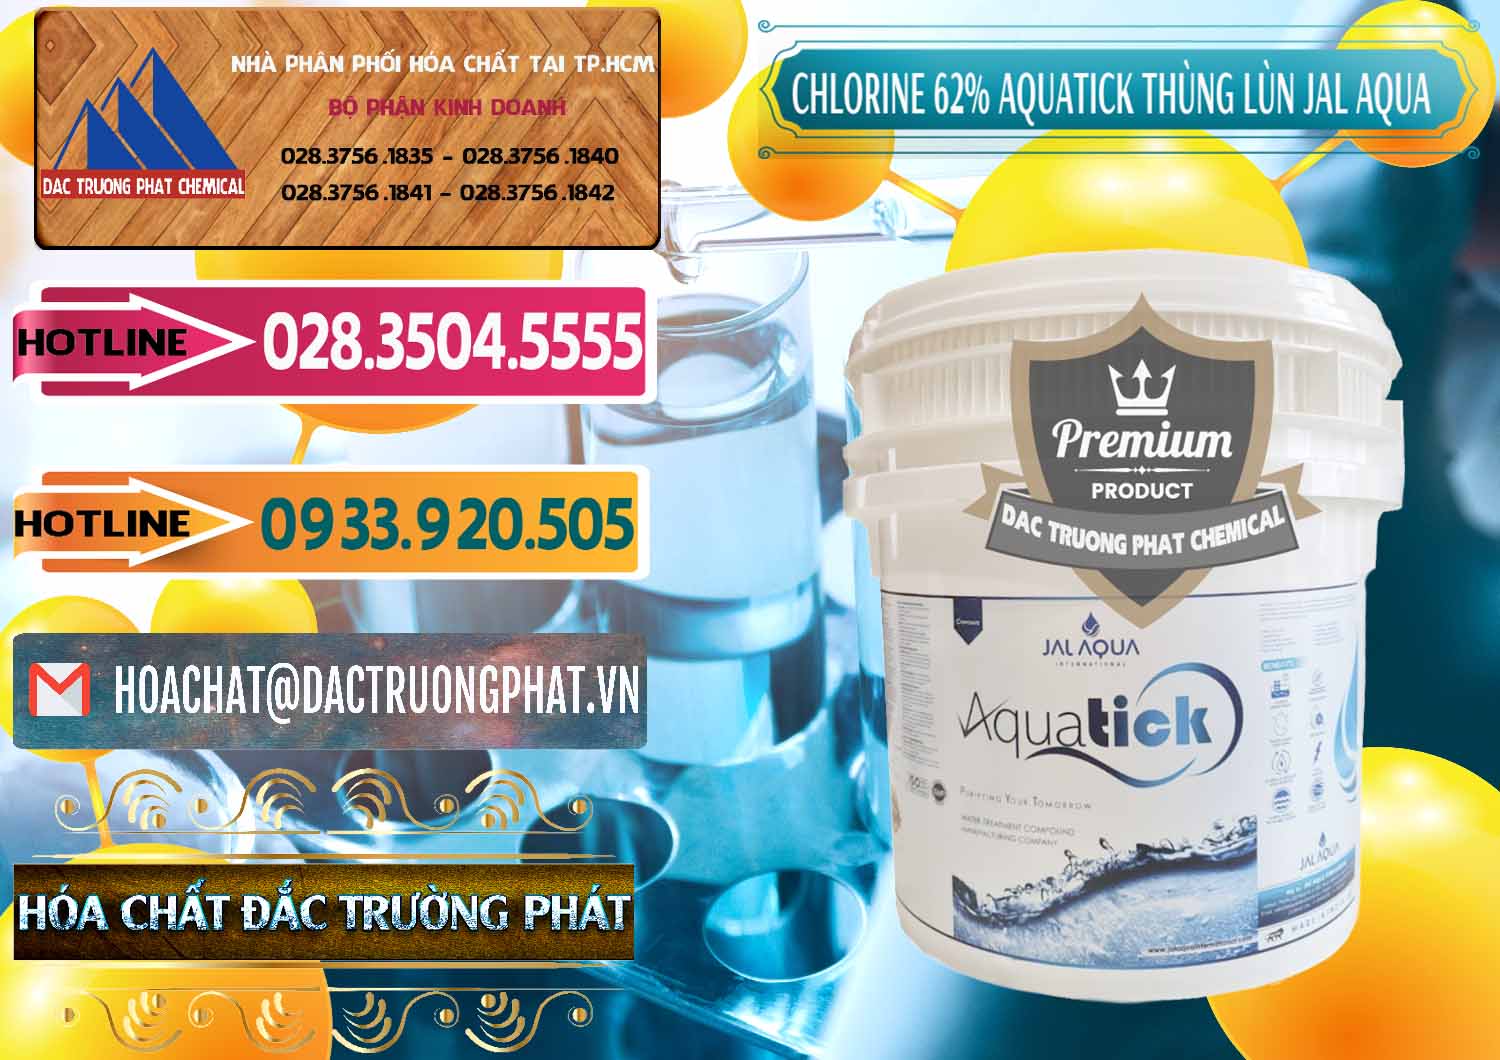 Nơi chuyên cung cấp và bán Chlorine – Clorin 62% Aquatick Thùng Lùn Jal Aqua Ấn Độ India - 0238 - Công ty cung cấp & phân phối hóa chất tại TP.HCM - dactruongphat.vn